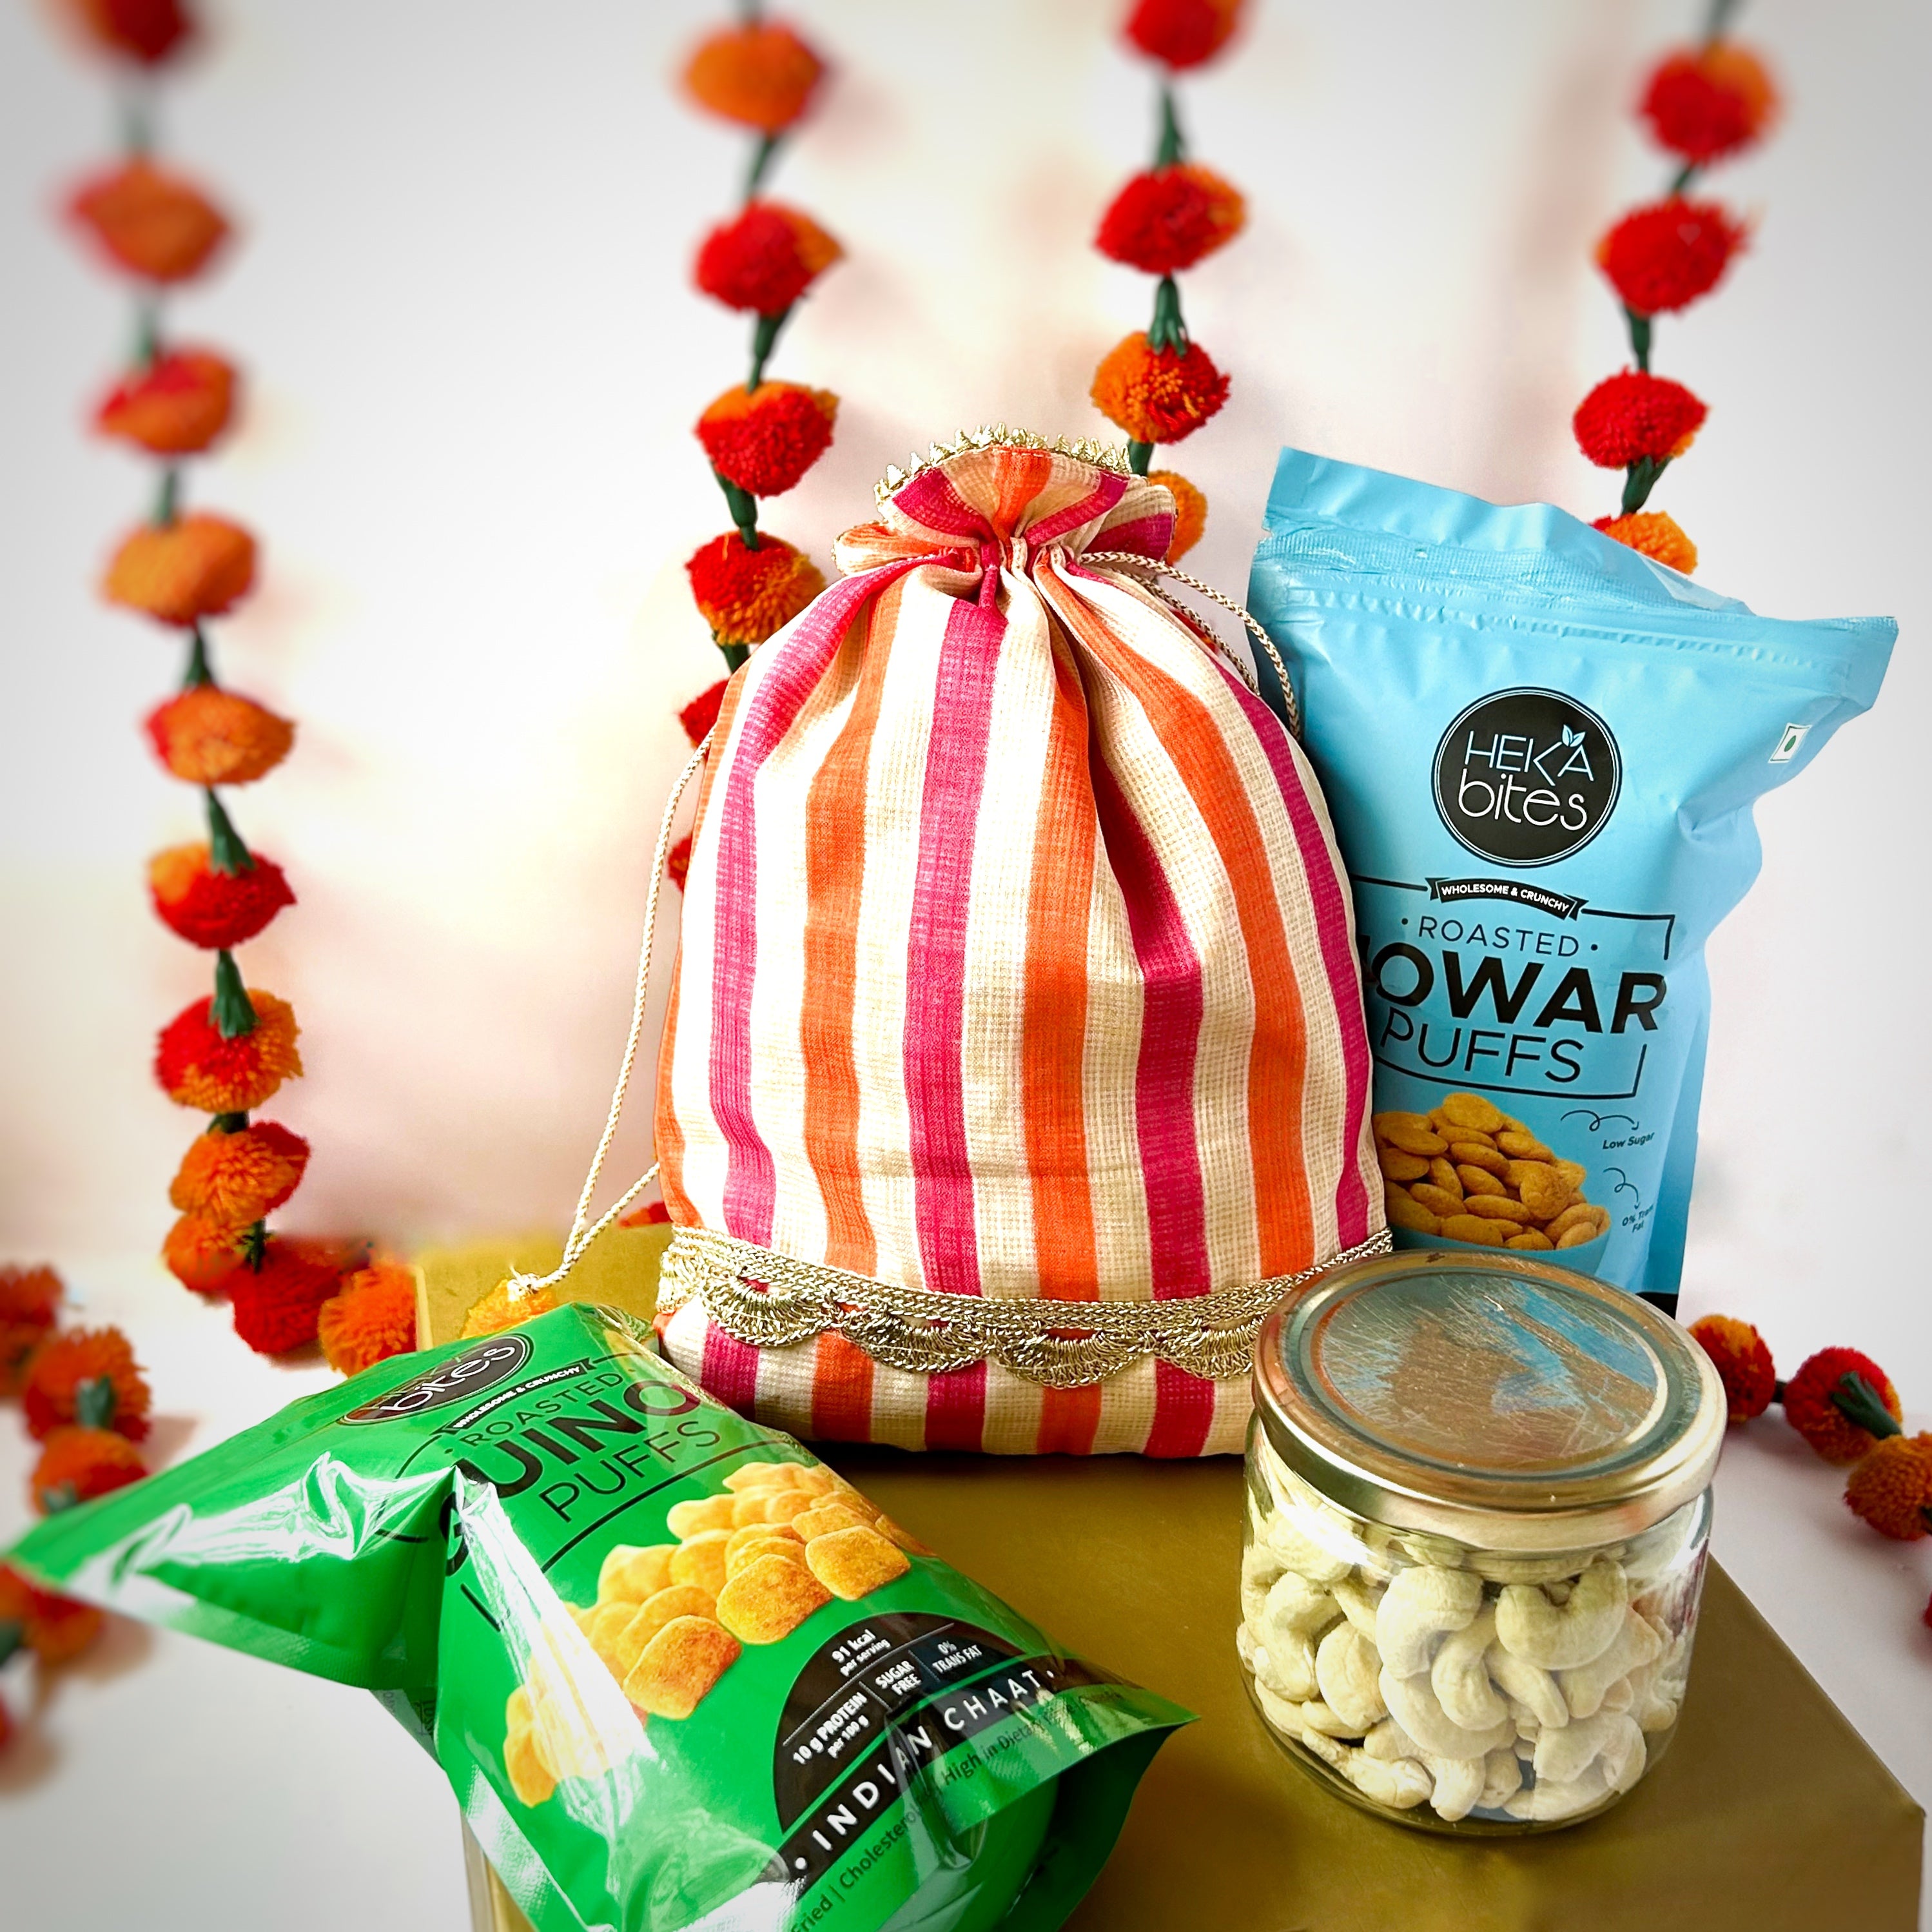 Heka Bites Hamper - Raw Cashew , Roasted Jowar Puffs & Roasted Quinoa Puffs 245G